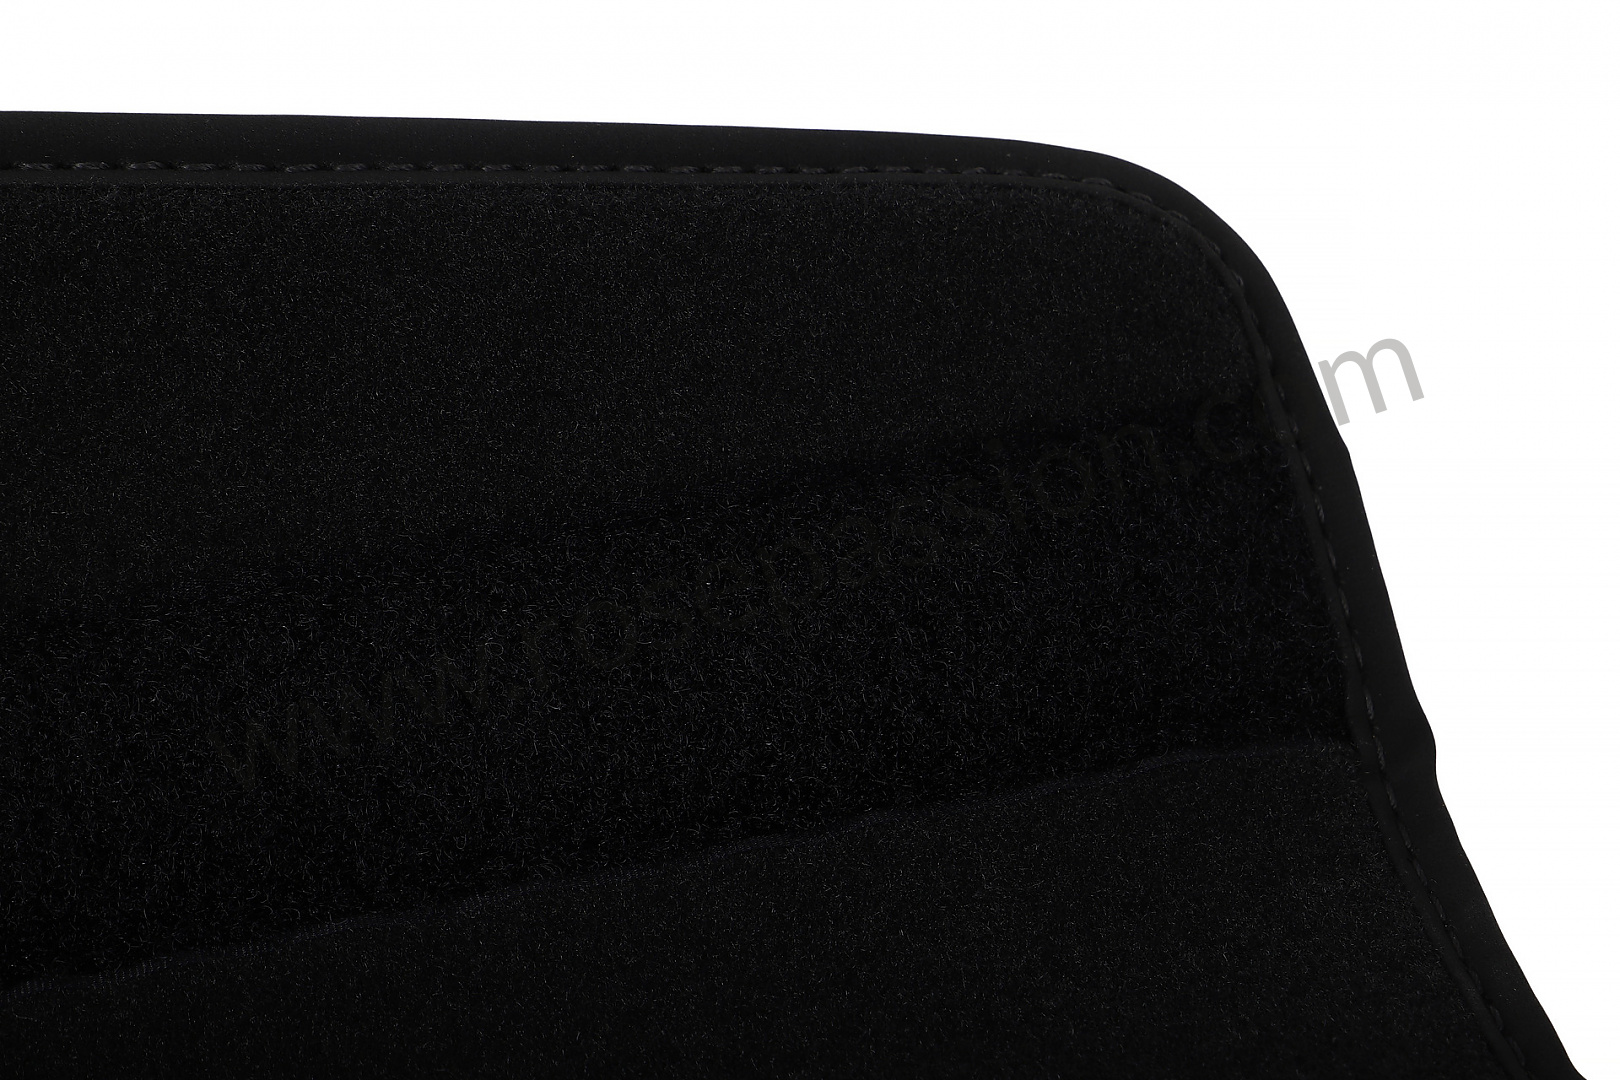 P235498 - 95B04480040OS5 - Veloursteppich matte kofferraum inklusiv  schutzfolie ladekante schwarz für Porsche